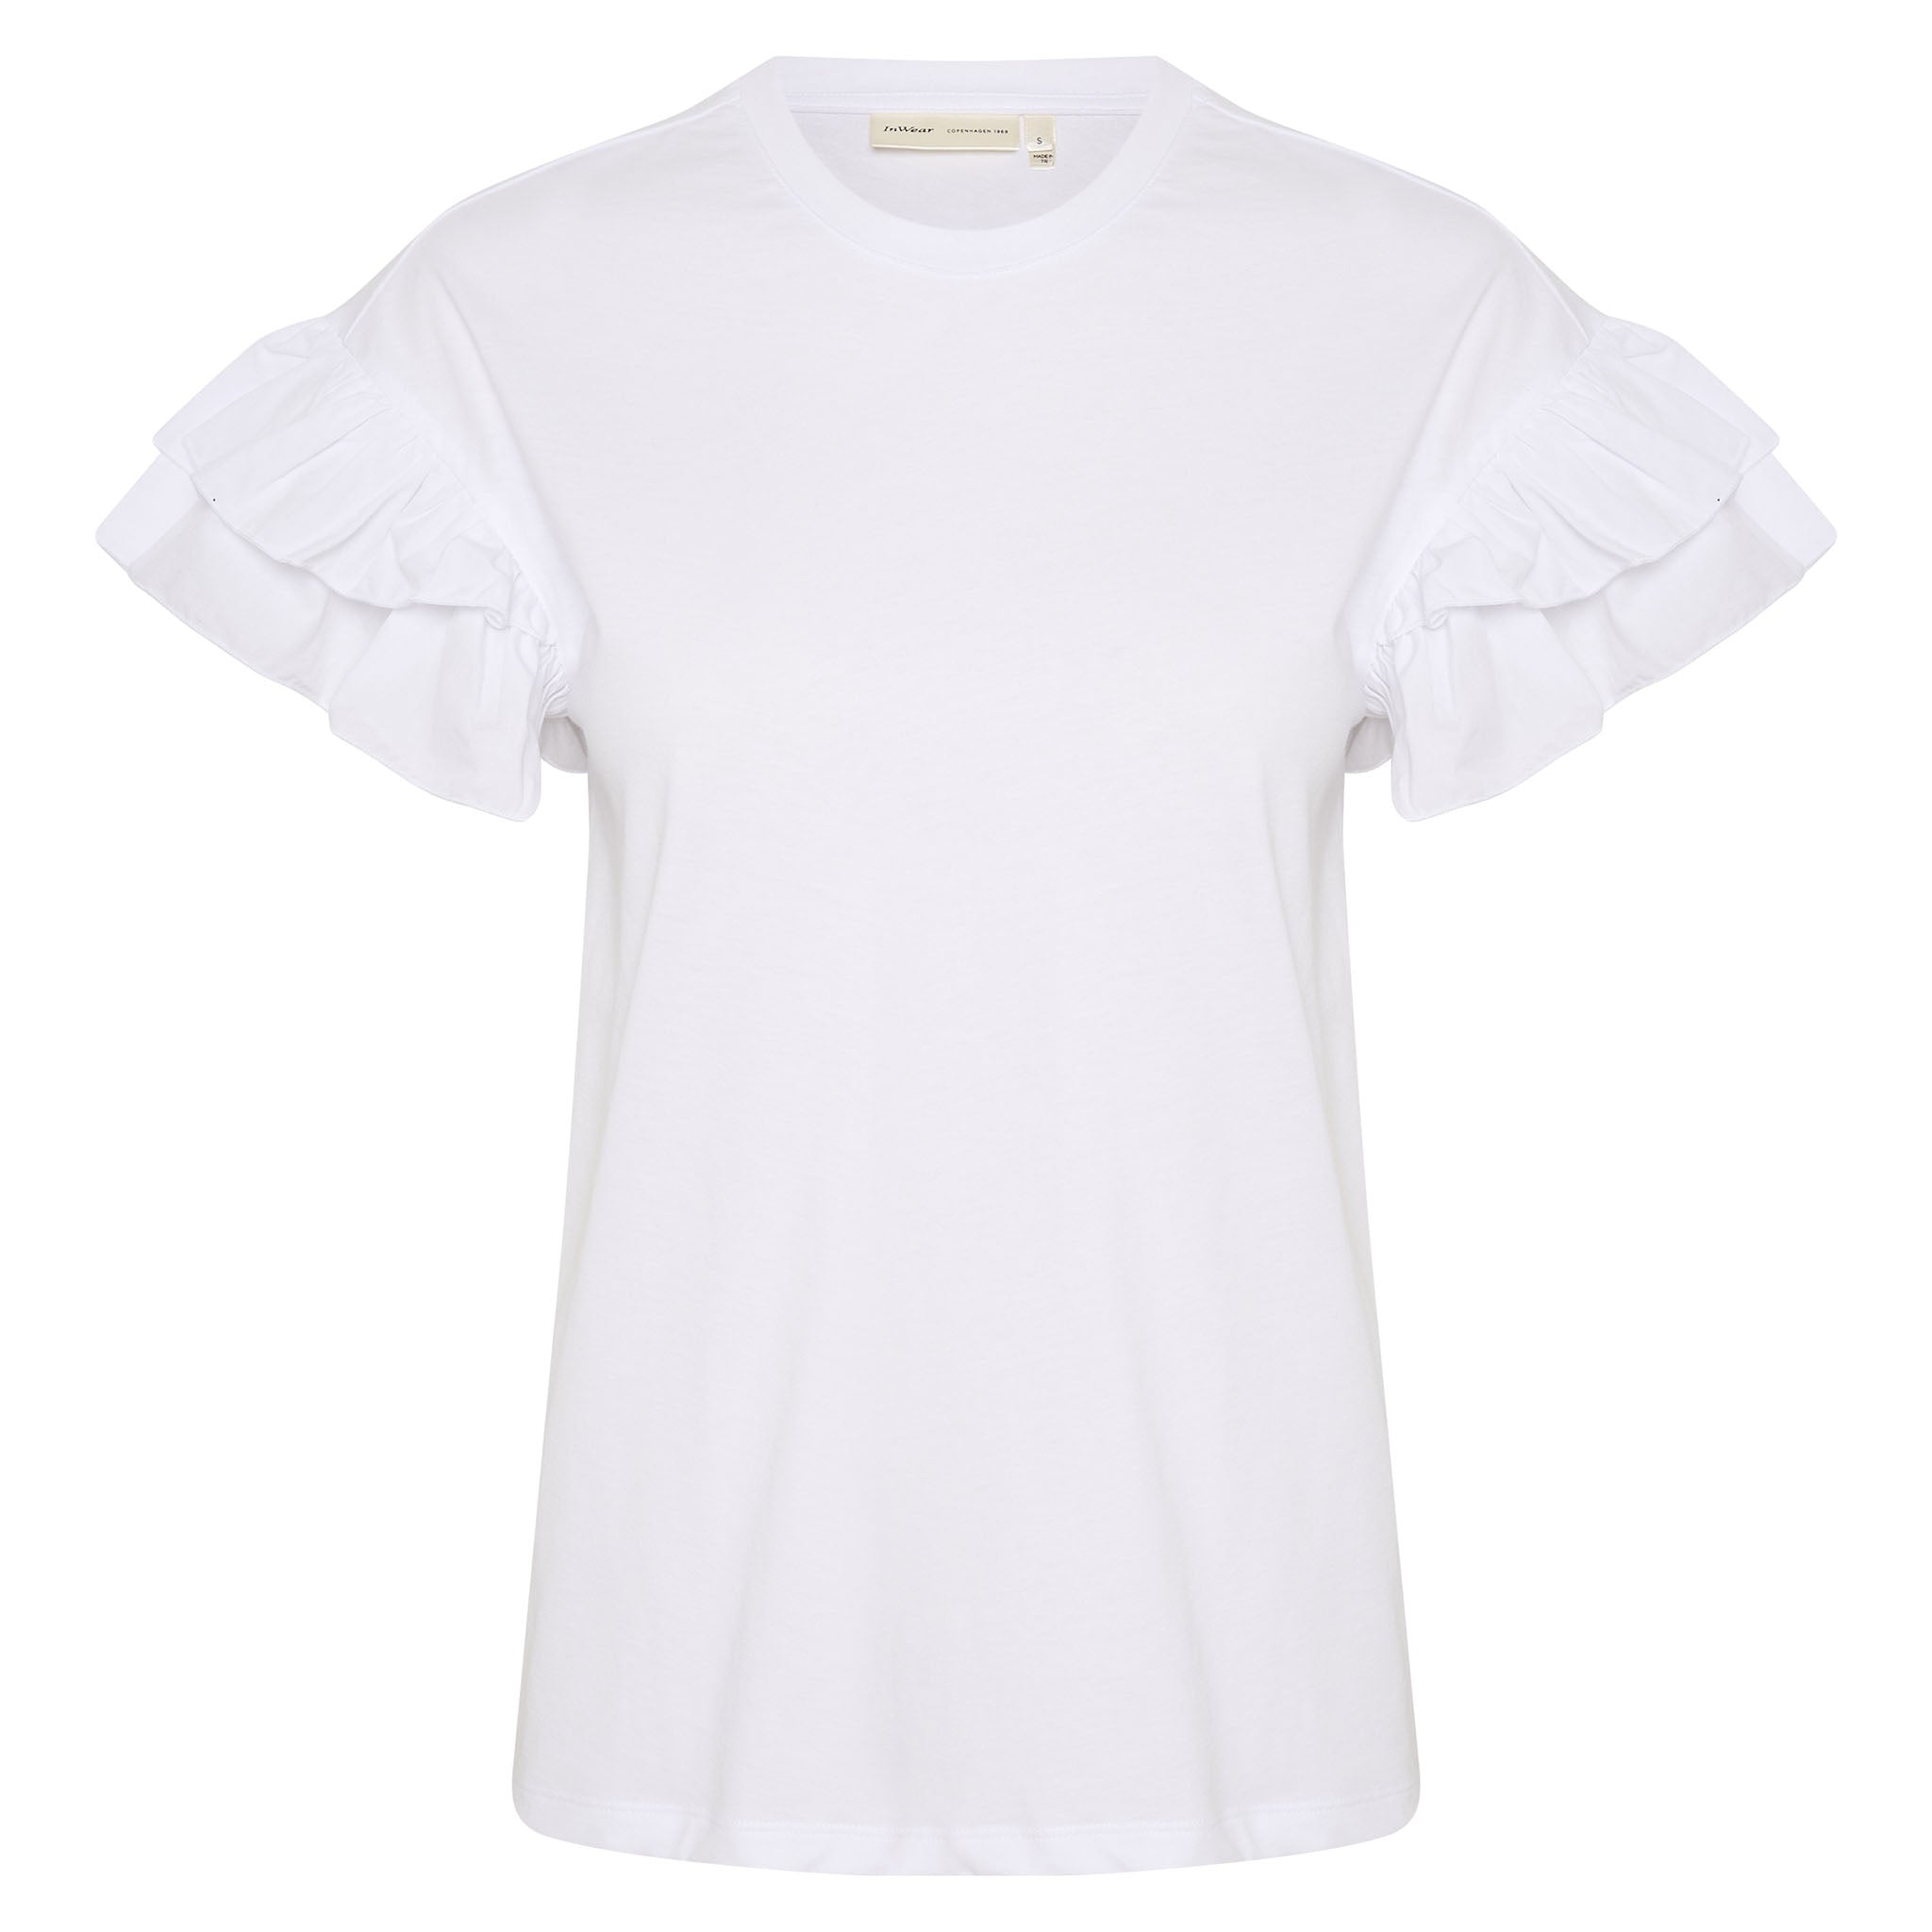 In Wear, valkoinen t-paita, jossa on frilla-hihat. Etukuva.